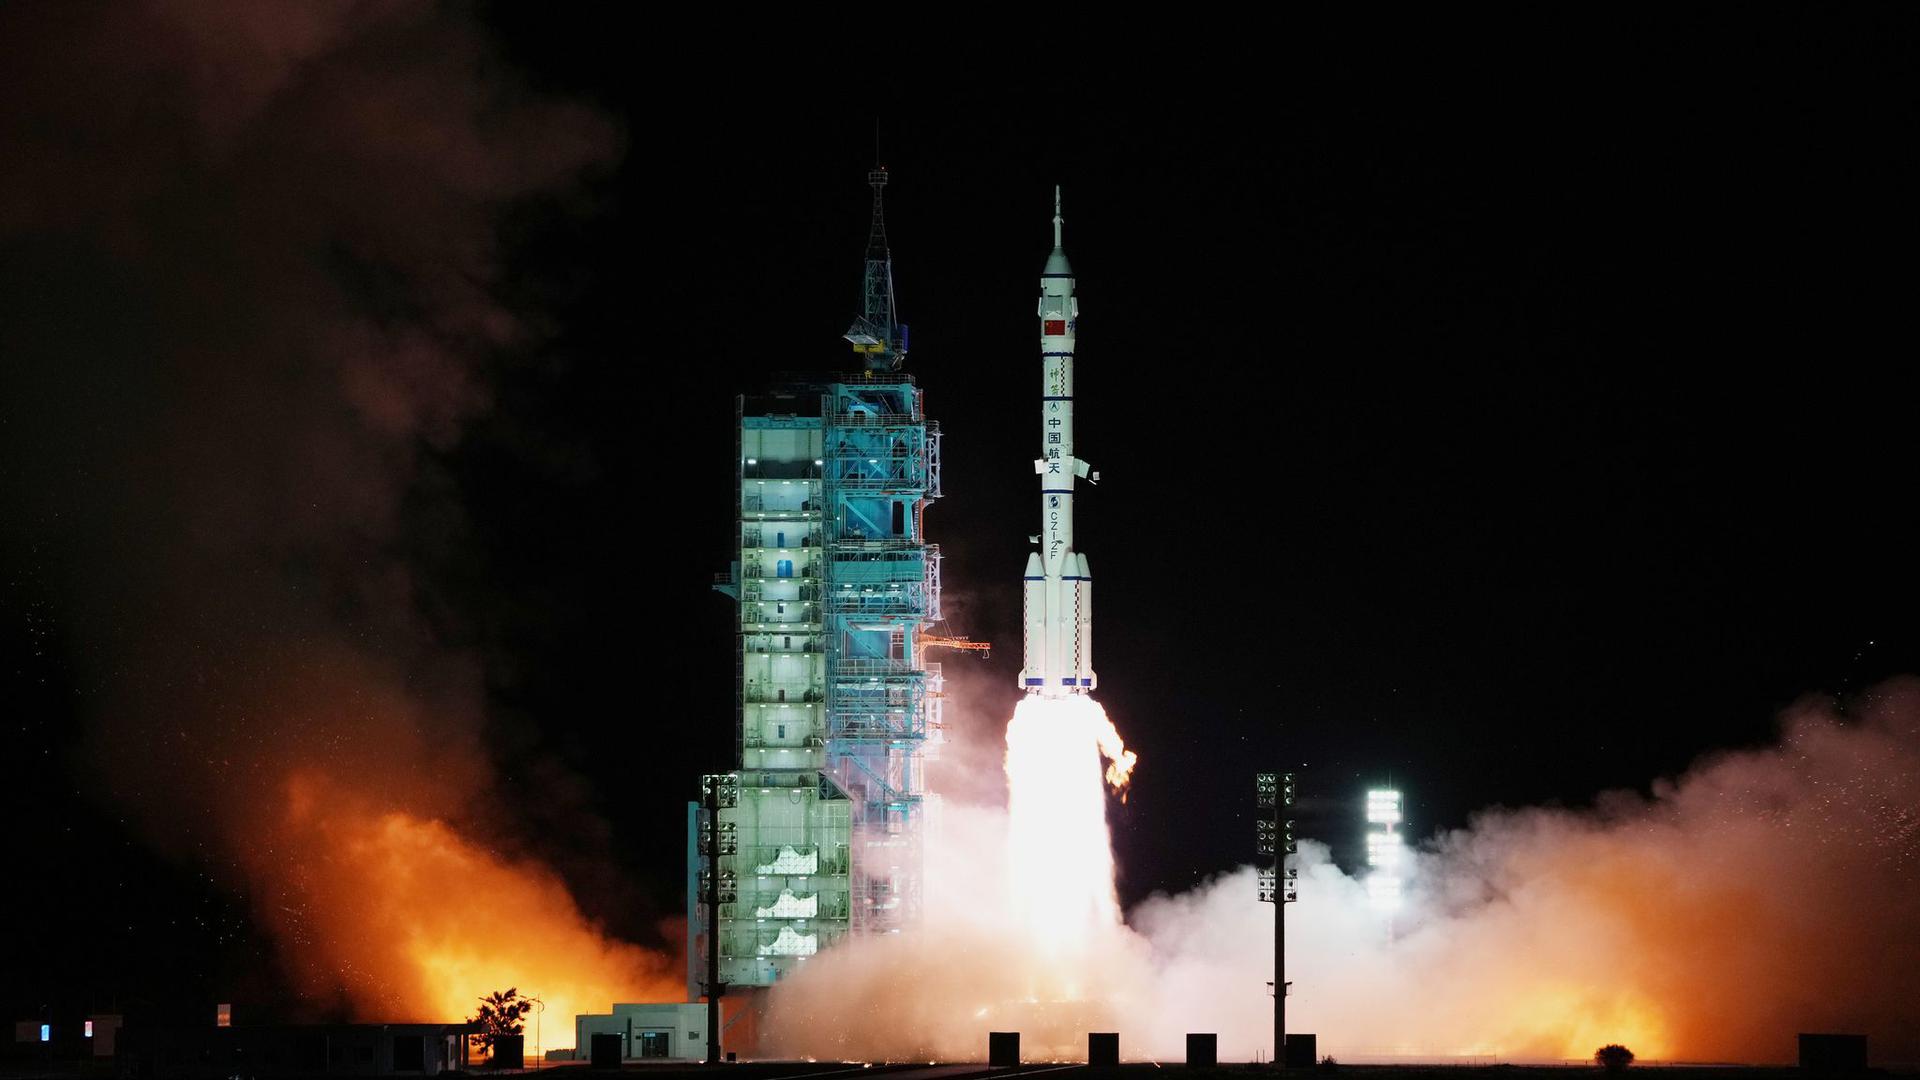 Das Raumschiff „Shenzhou 13“ mit drei chinesischen Astronauten startet vom Jiuquan Satellite Launch Center. Nasa-Chef Nelson hat vor dem chinesischen Weltraumprogramm gewarnt.